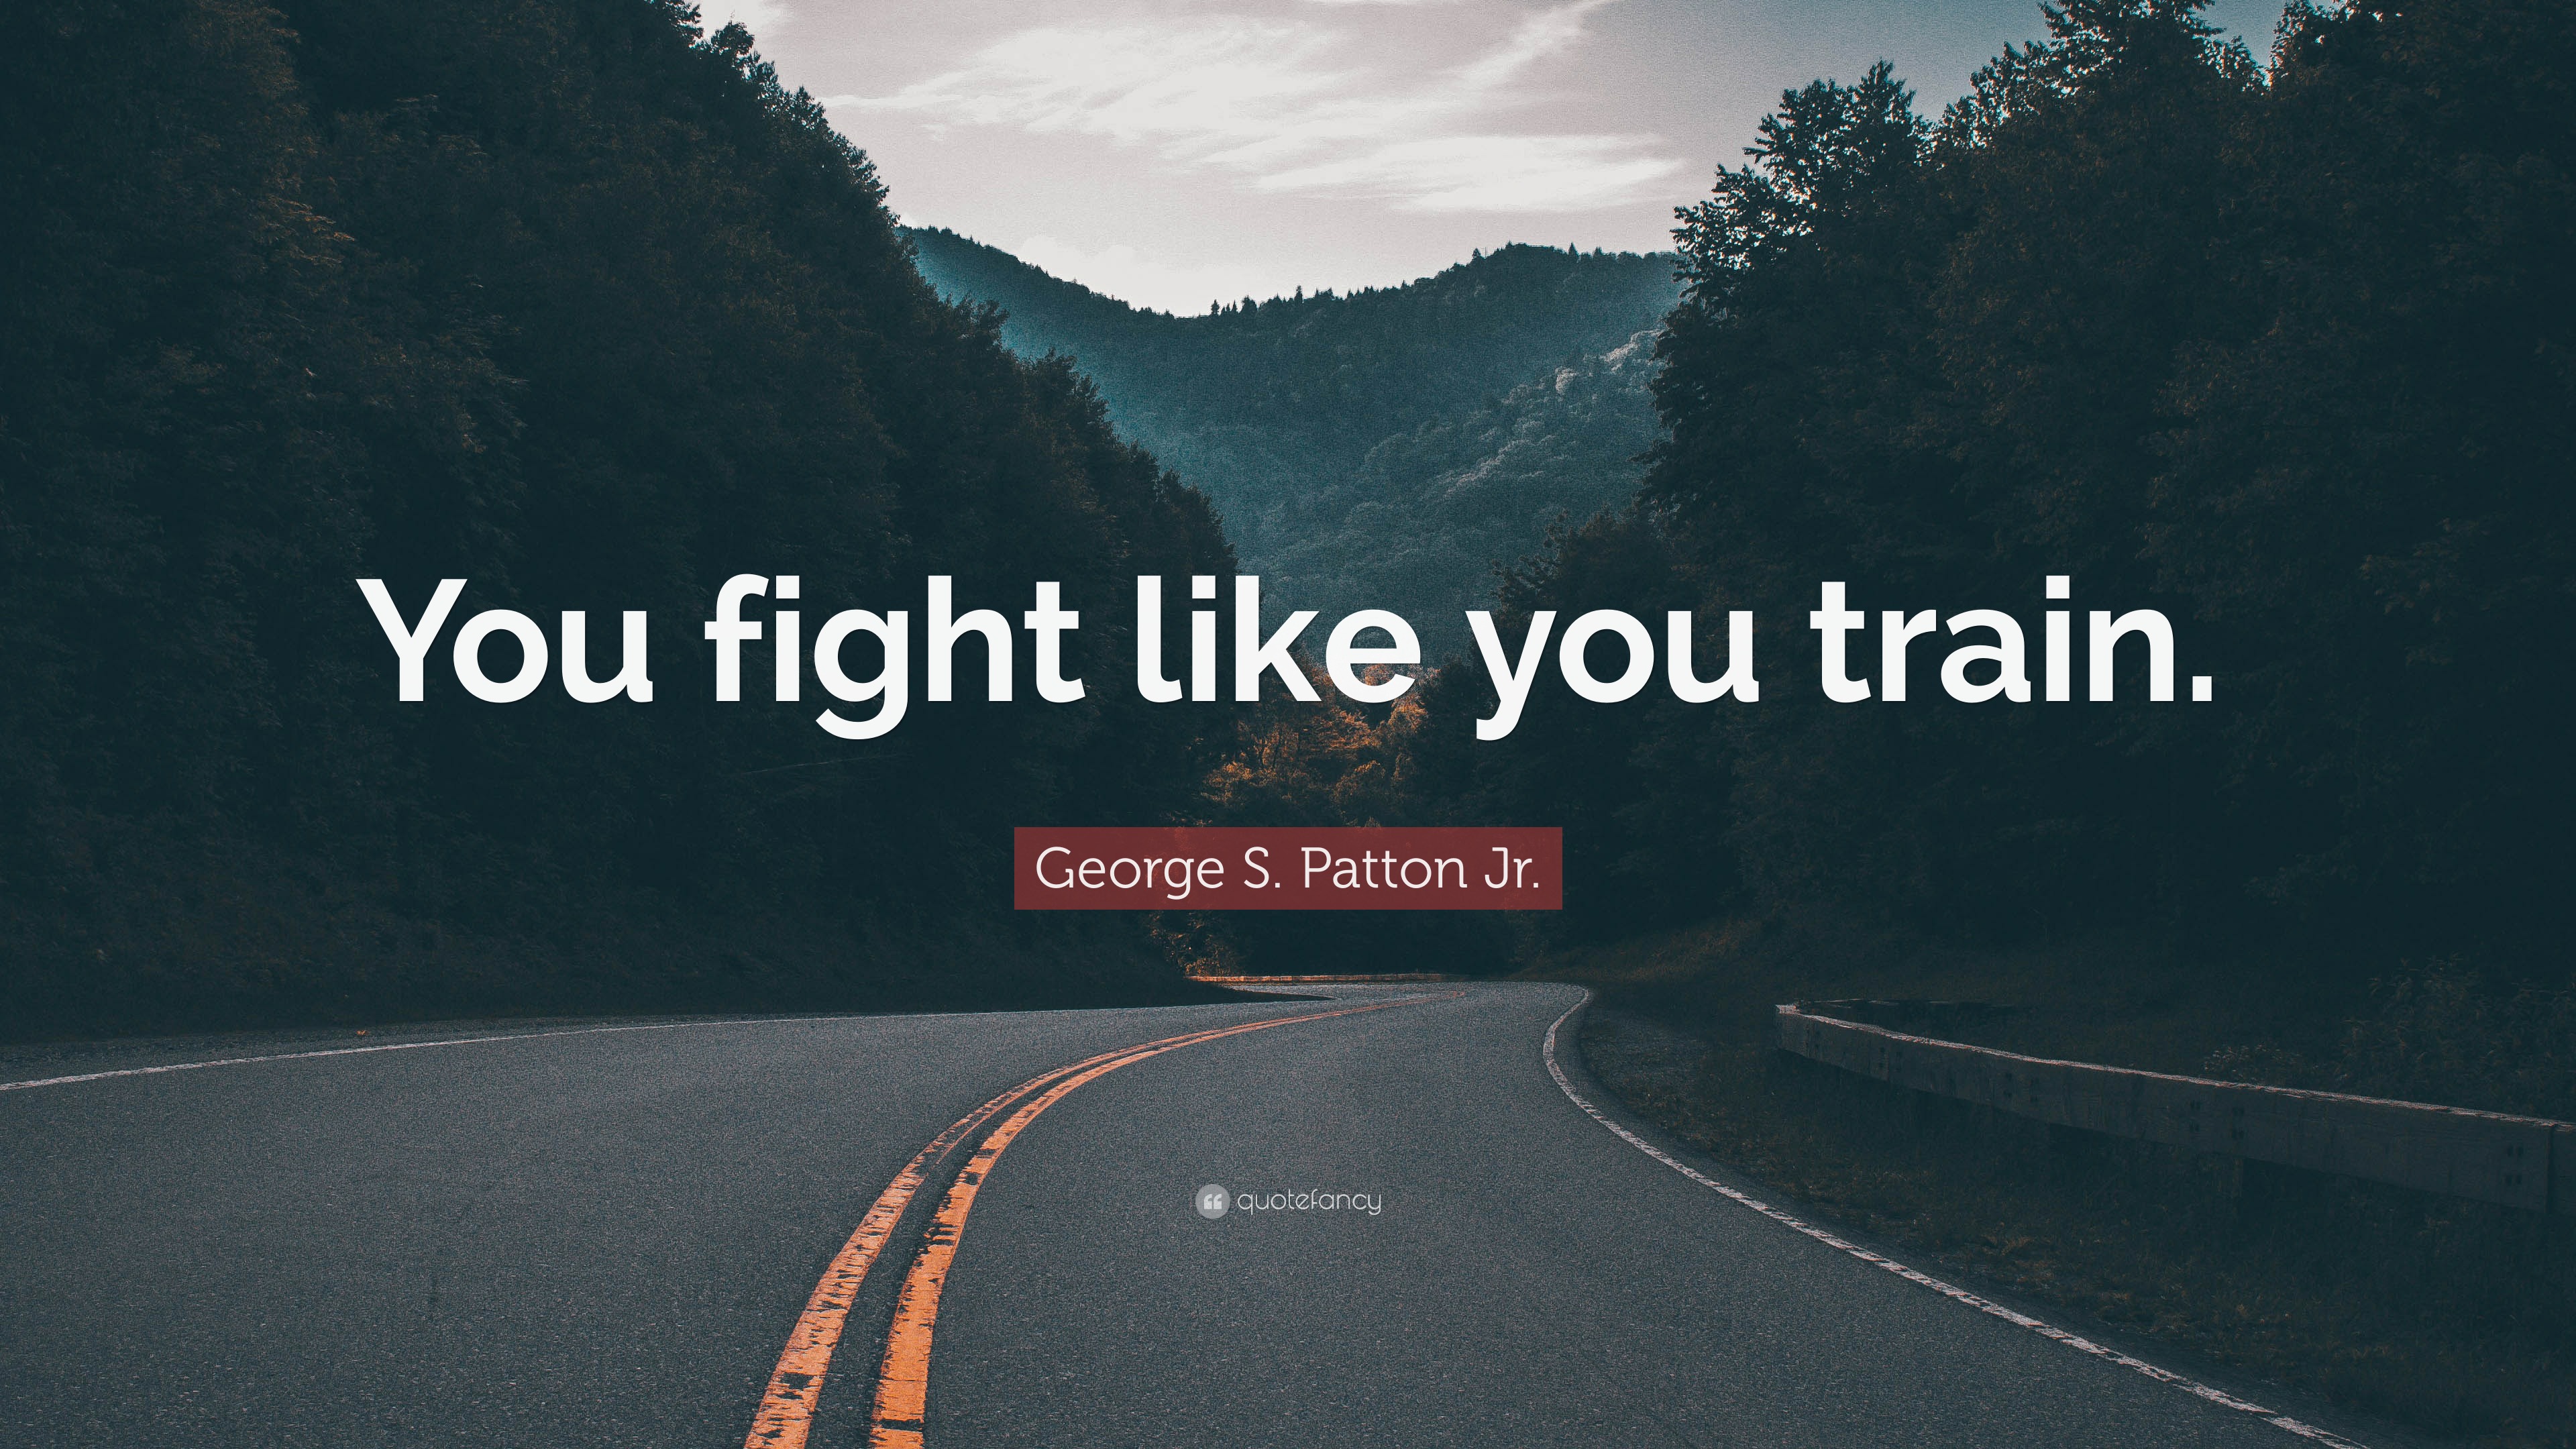 Train like you fight